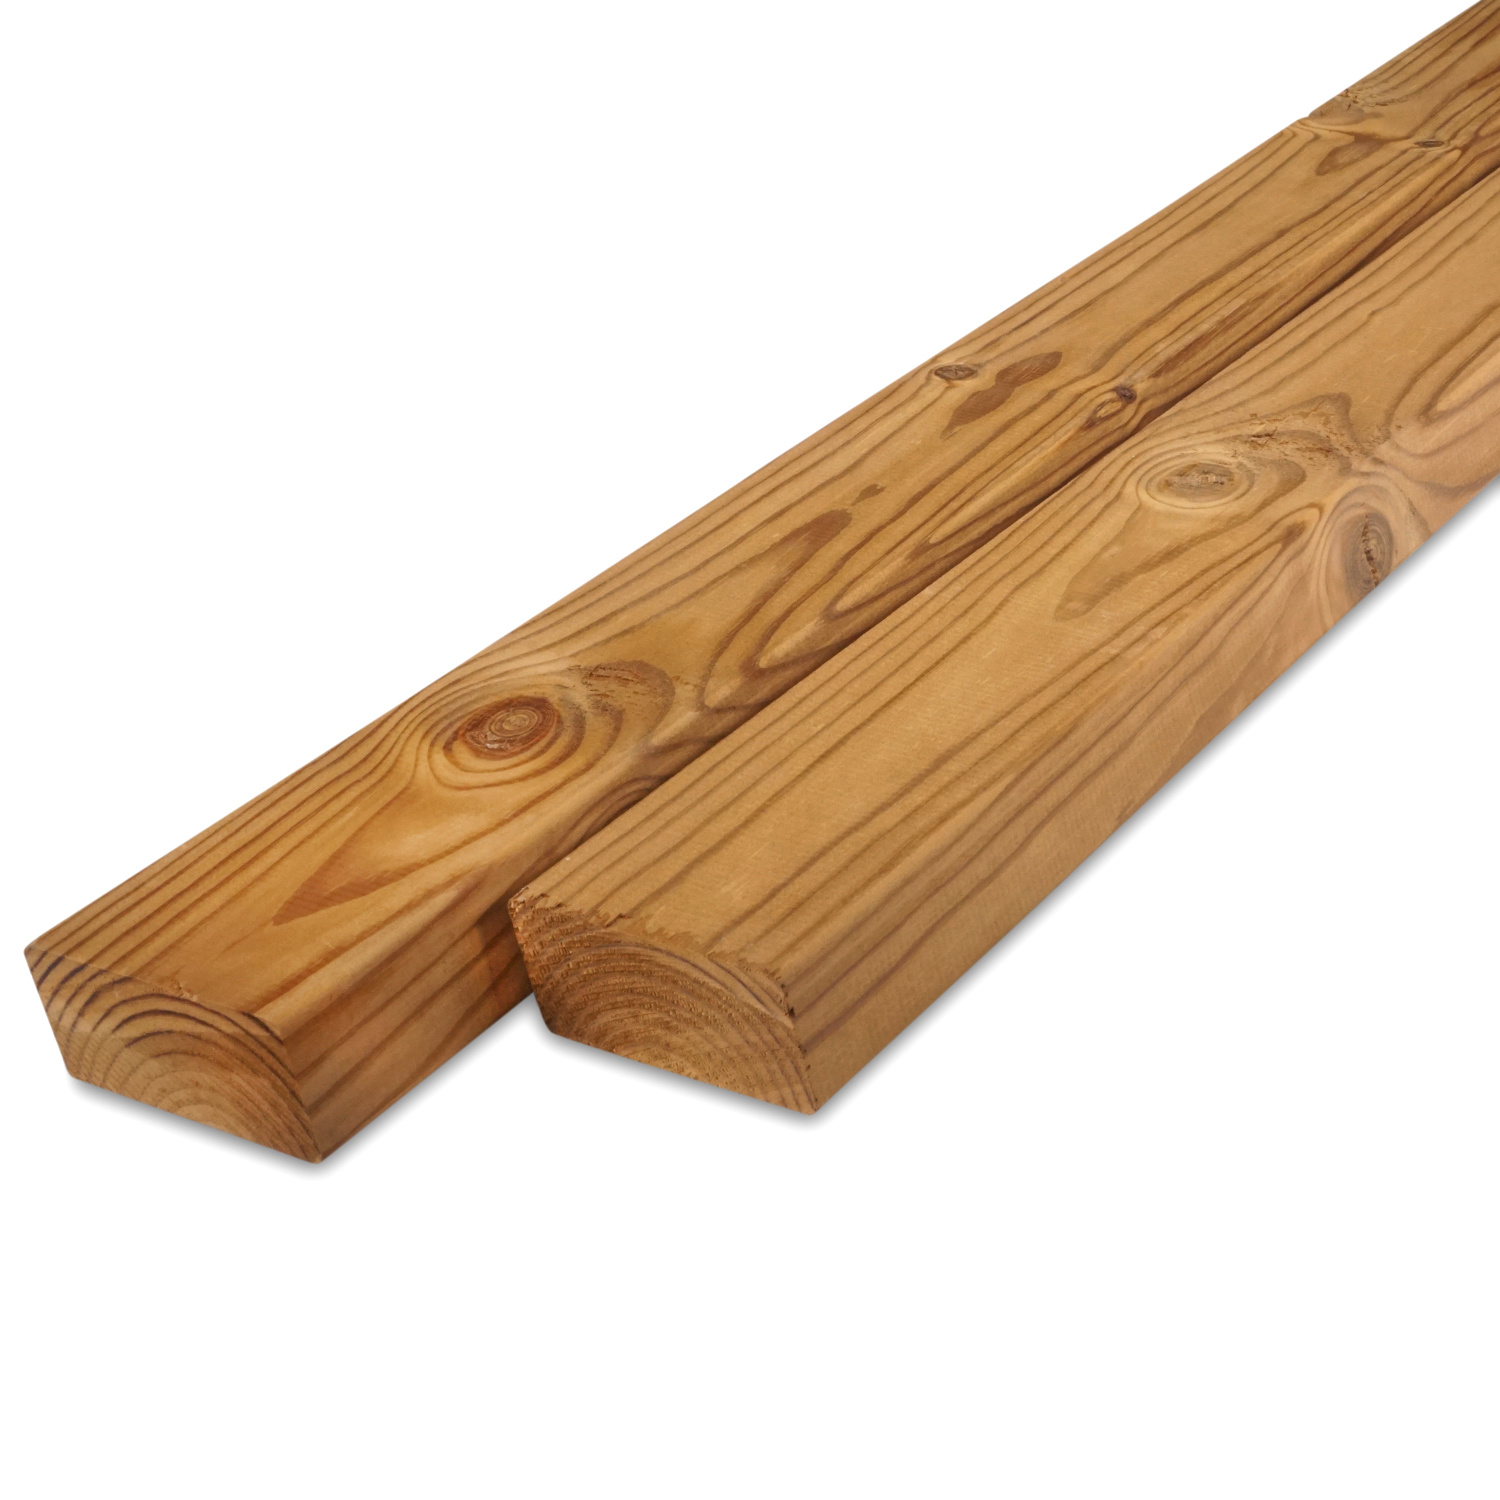  Thermowood Grenen rhombus deel - profiel - plank 28x70mm - geschaafd - kunstmatig gedroogd (kd 8-12%) - thermisch gemodificeerd Grenen hout (thermohout)